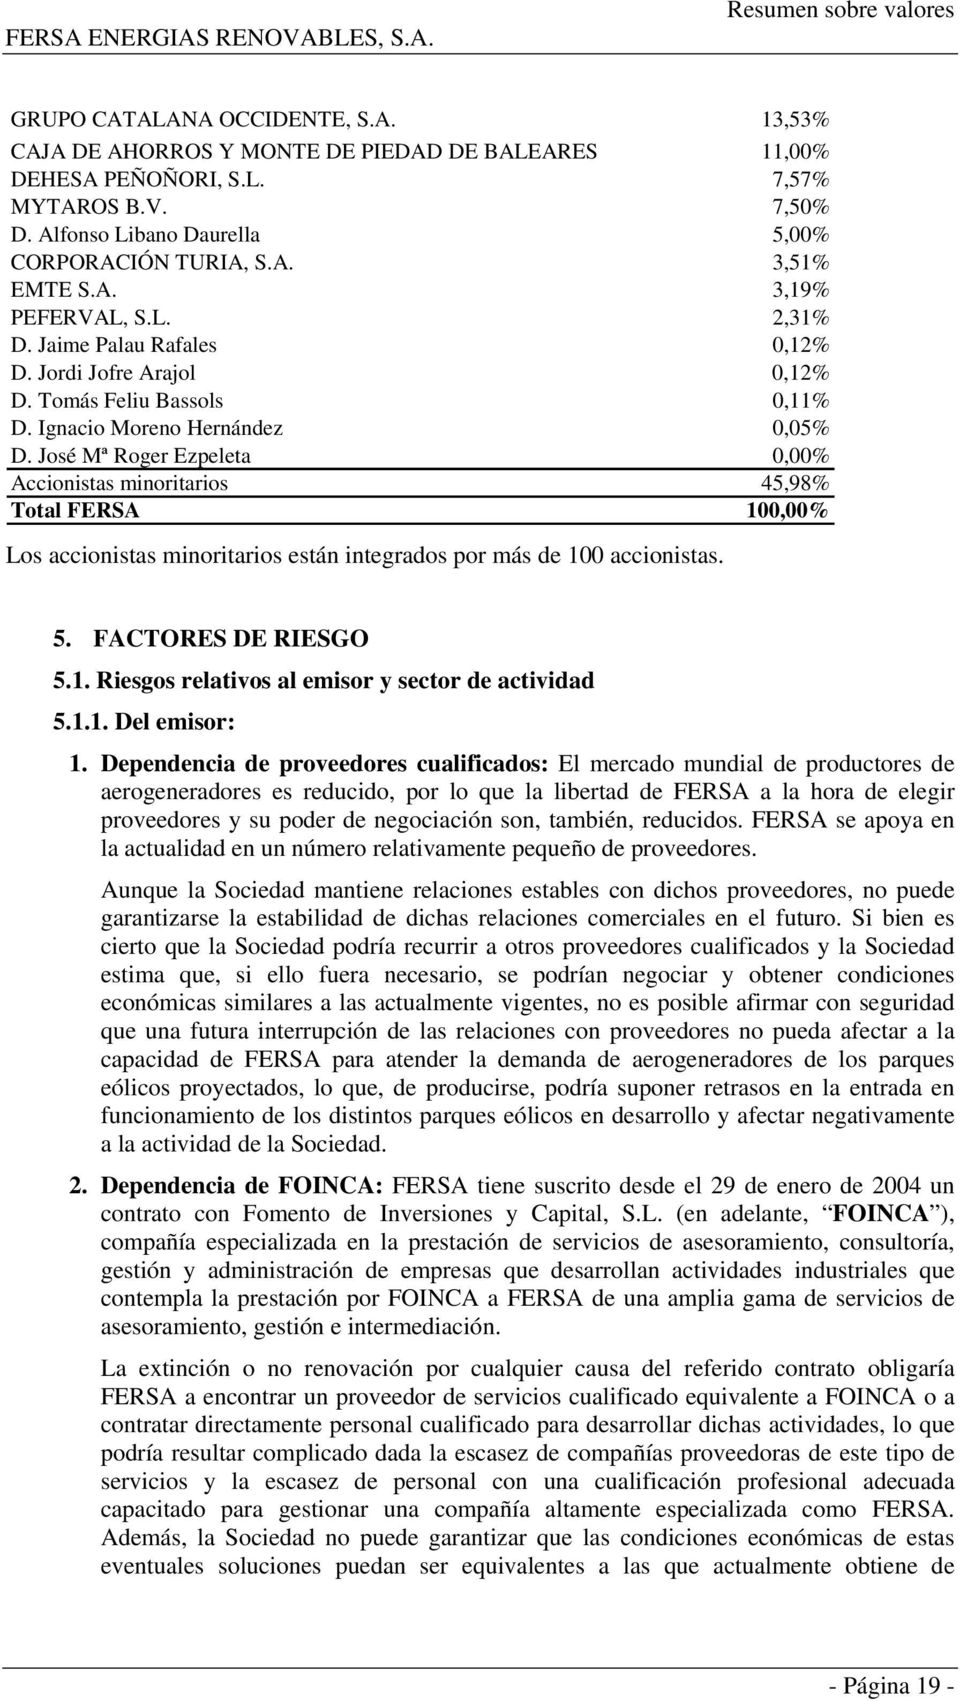 José Mª Roger Ezpeleta 0,00% Accionistas minoritarios 45,98% Total FERSA 100,00% Los accionistas minoritarios están integrados por más de 100 accionistas. 5. FACTORES DE RIESGO 5.1. Riesgos relativos al emisor y sector de actividad 5.